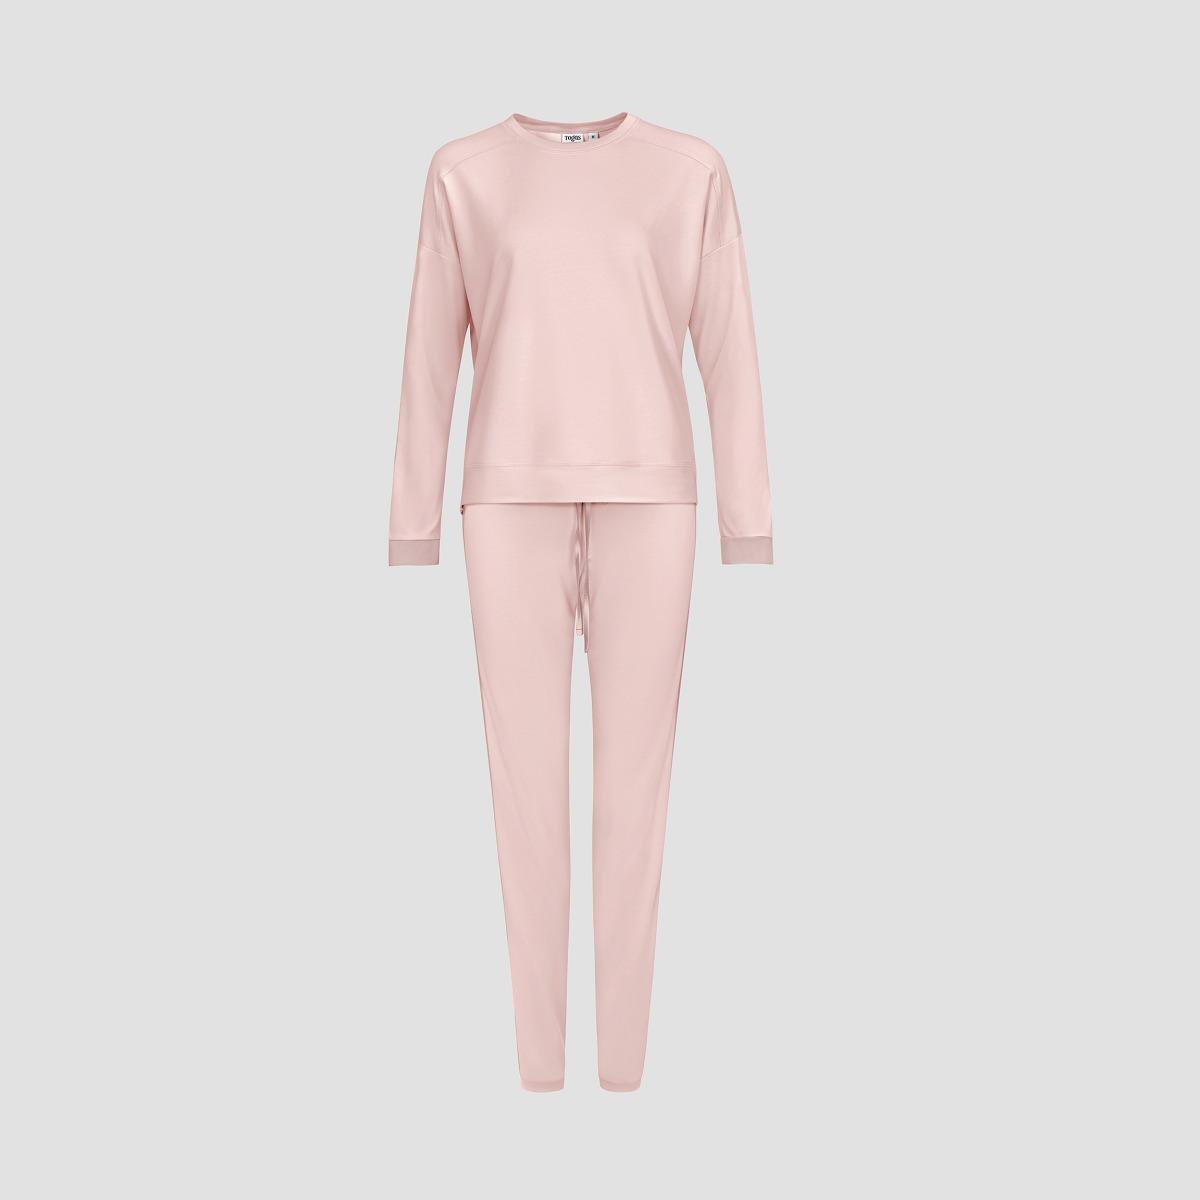 Пижама Togas Рене розовая женская жен пижама арт 19 0681 темно серый р 48